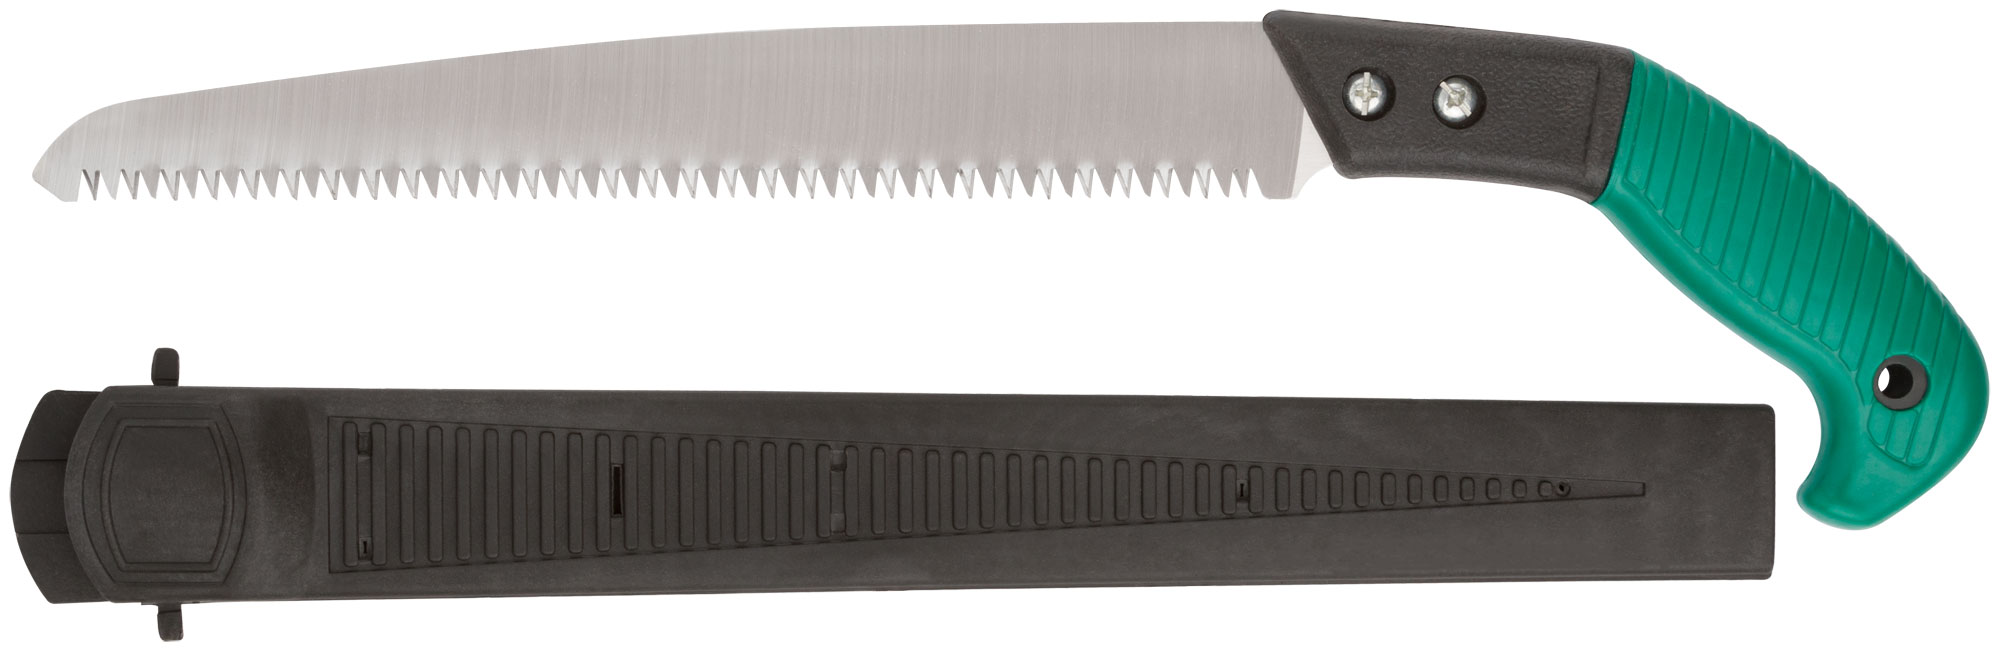 Ножовка садовая с ножнами, 300 мм, FIT 40595 ножовка садовая 420 мм пластиковая ручка